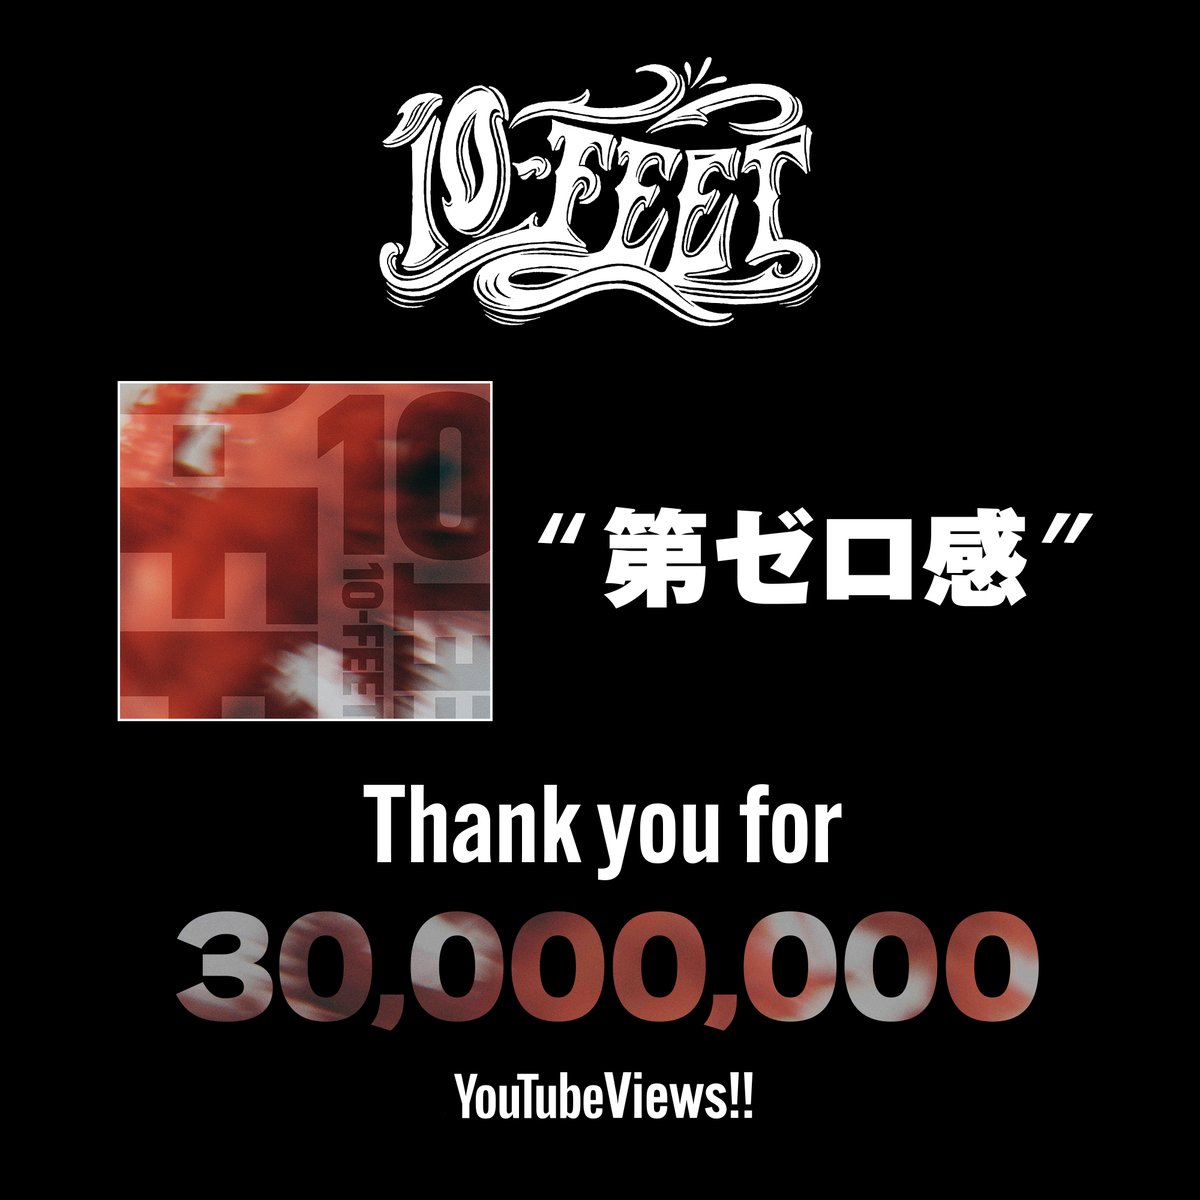 映画『THE FIRST SLAM DUNK』
エンディング主題歌
「#第ゼロ感」

Music Videoの再生回数が3,000万回を突破！
ご視聴頂いた皆様、ありがとうございます！！

youtu.be/EsJGbHJyXYc

#コリンズ #SLAMDUNK #SLAMDUNKMOVIE #THEFIRSTSLAMDUNK
@YouTubeJapan